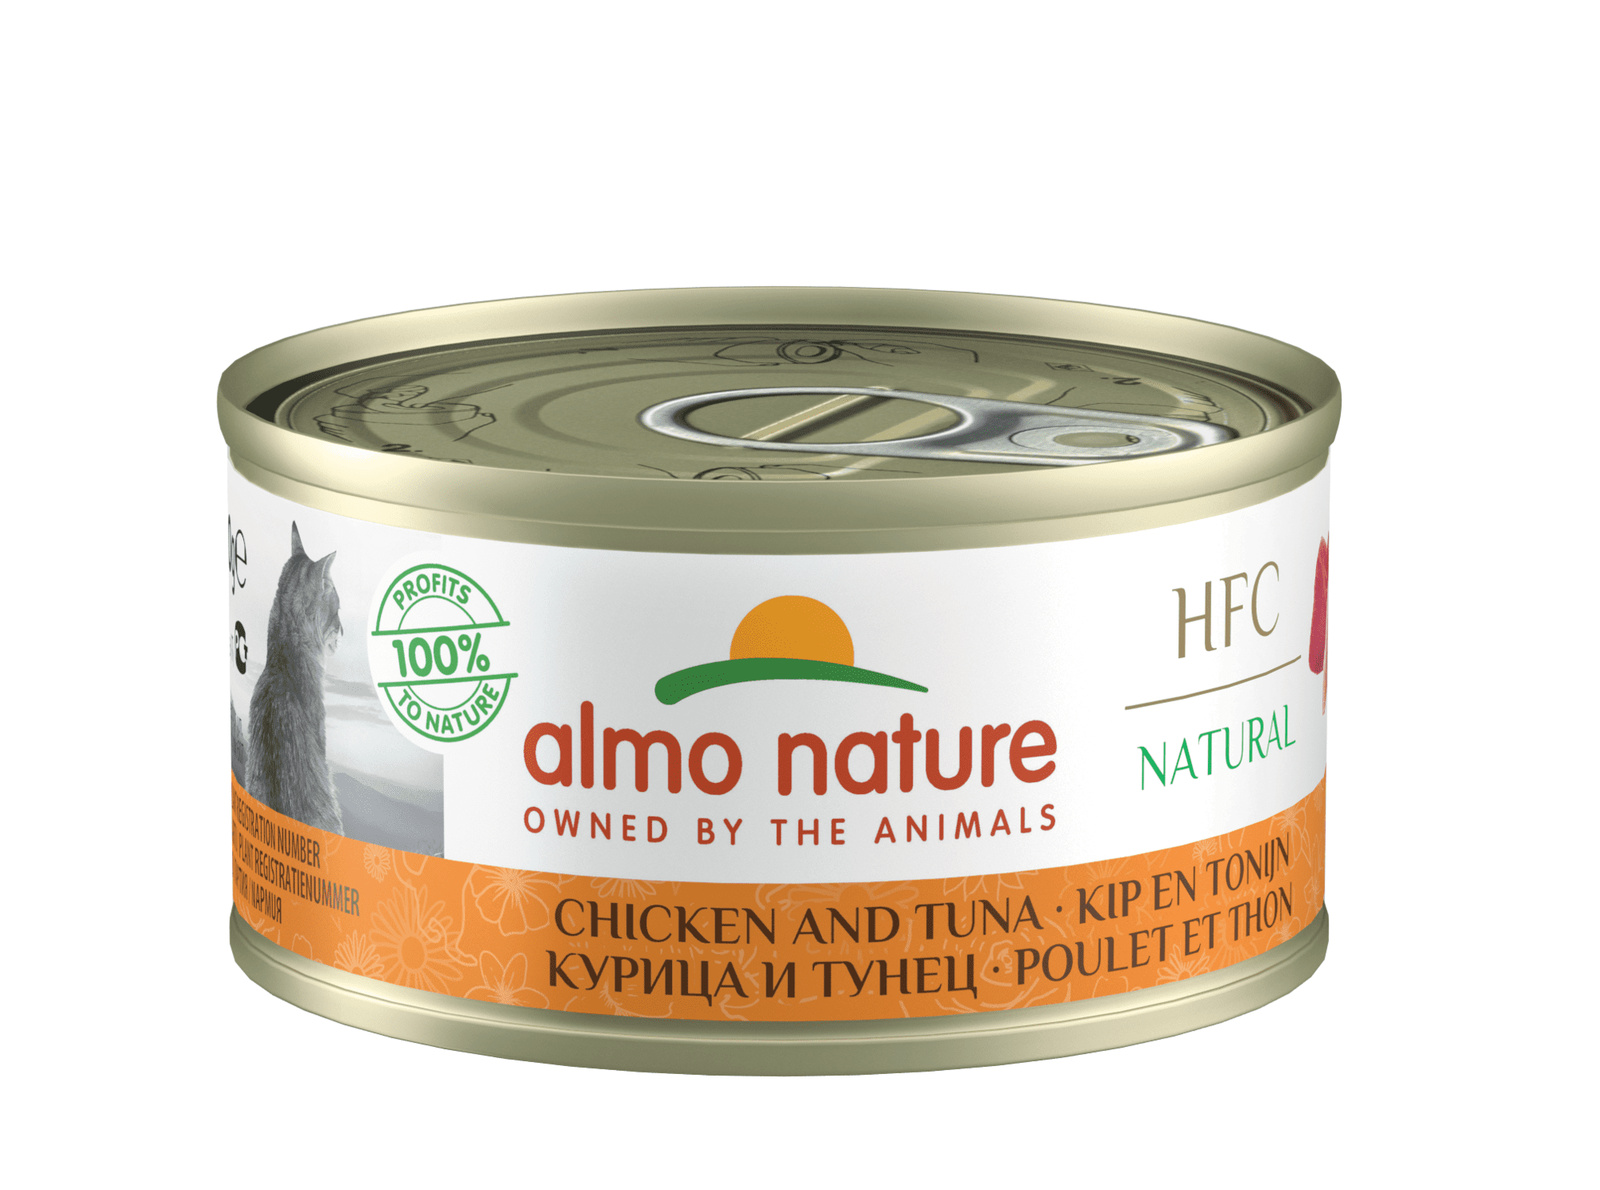 Almo Nature консервы Almo Nature консервы для кошек, с курицей и тунцом, 75% мяса (70 г) almo nature консервы almo nature консервы для кошек с курицей и тунцом 75% мяса 70 г